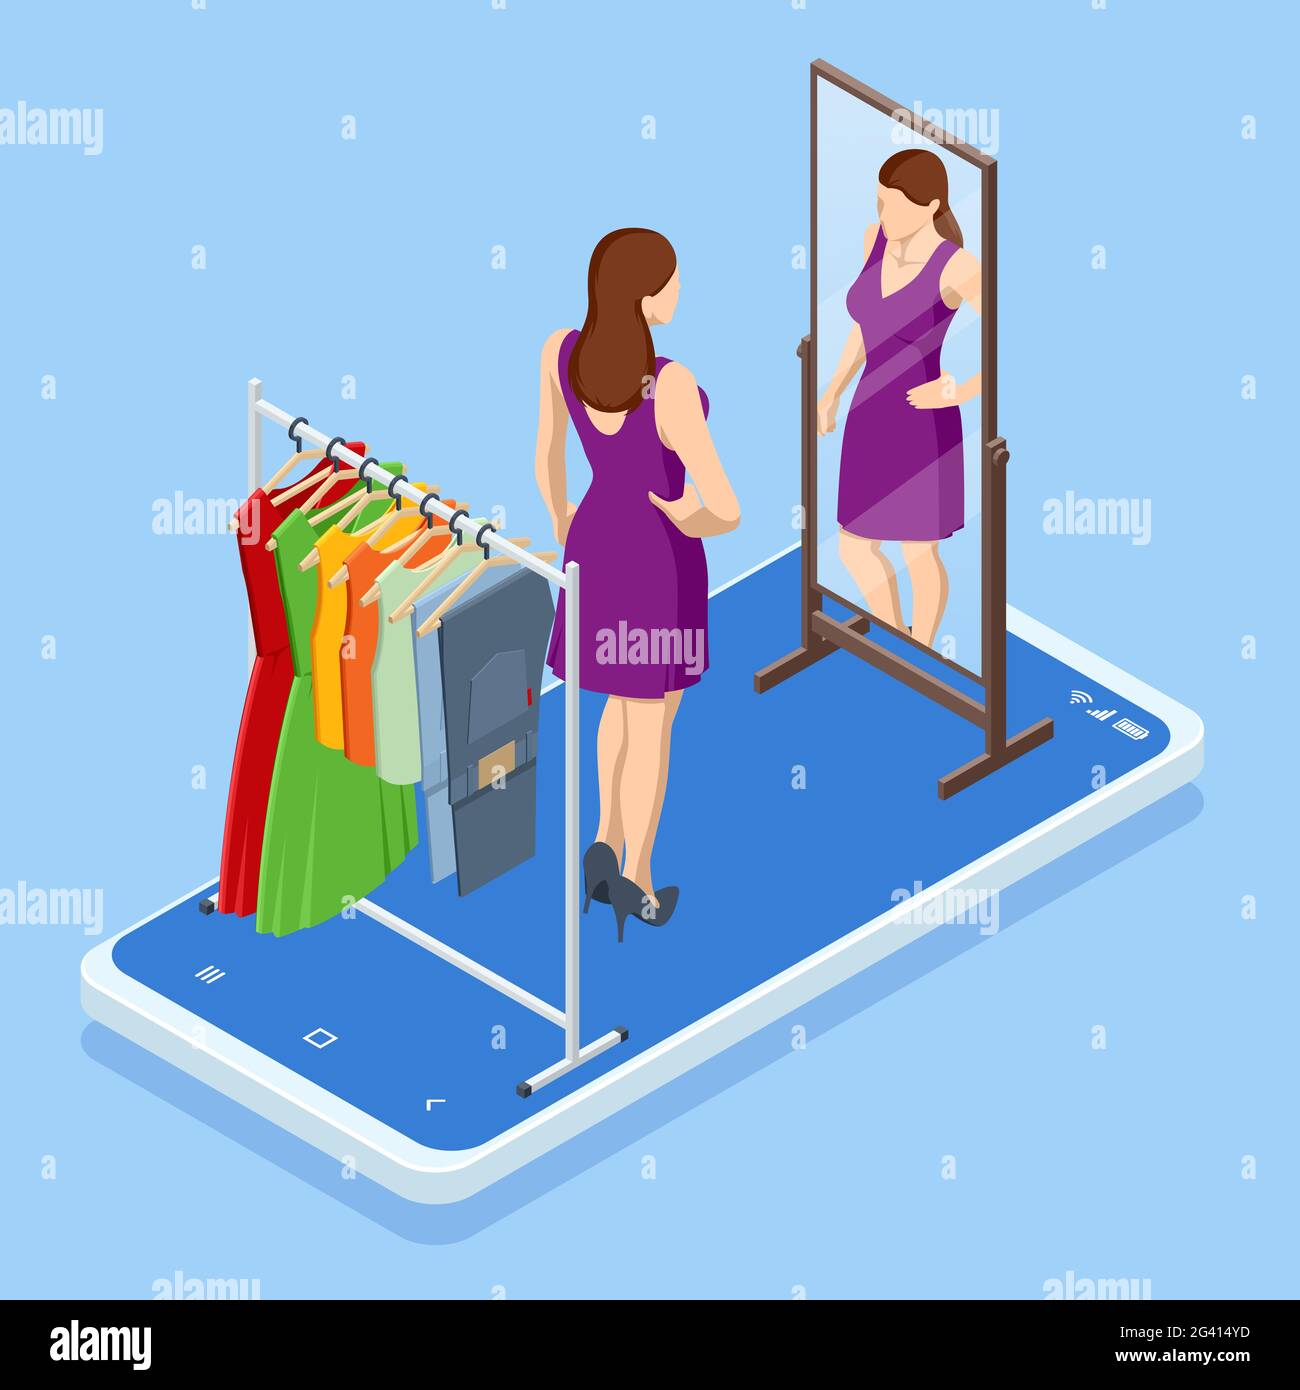 Isométrique Smart phone shopping en ligne, concept de magasin de vêtements.  E-commerce d'achat en ligne. Application d'achat moderne sur smartphone.  Acheter des vêtements sur le Web Image Vectorielle Stock - Alamy